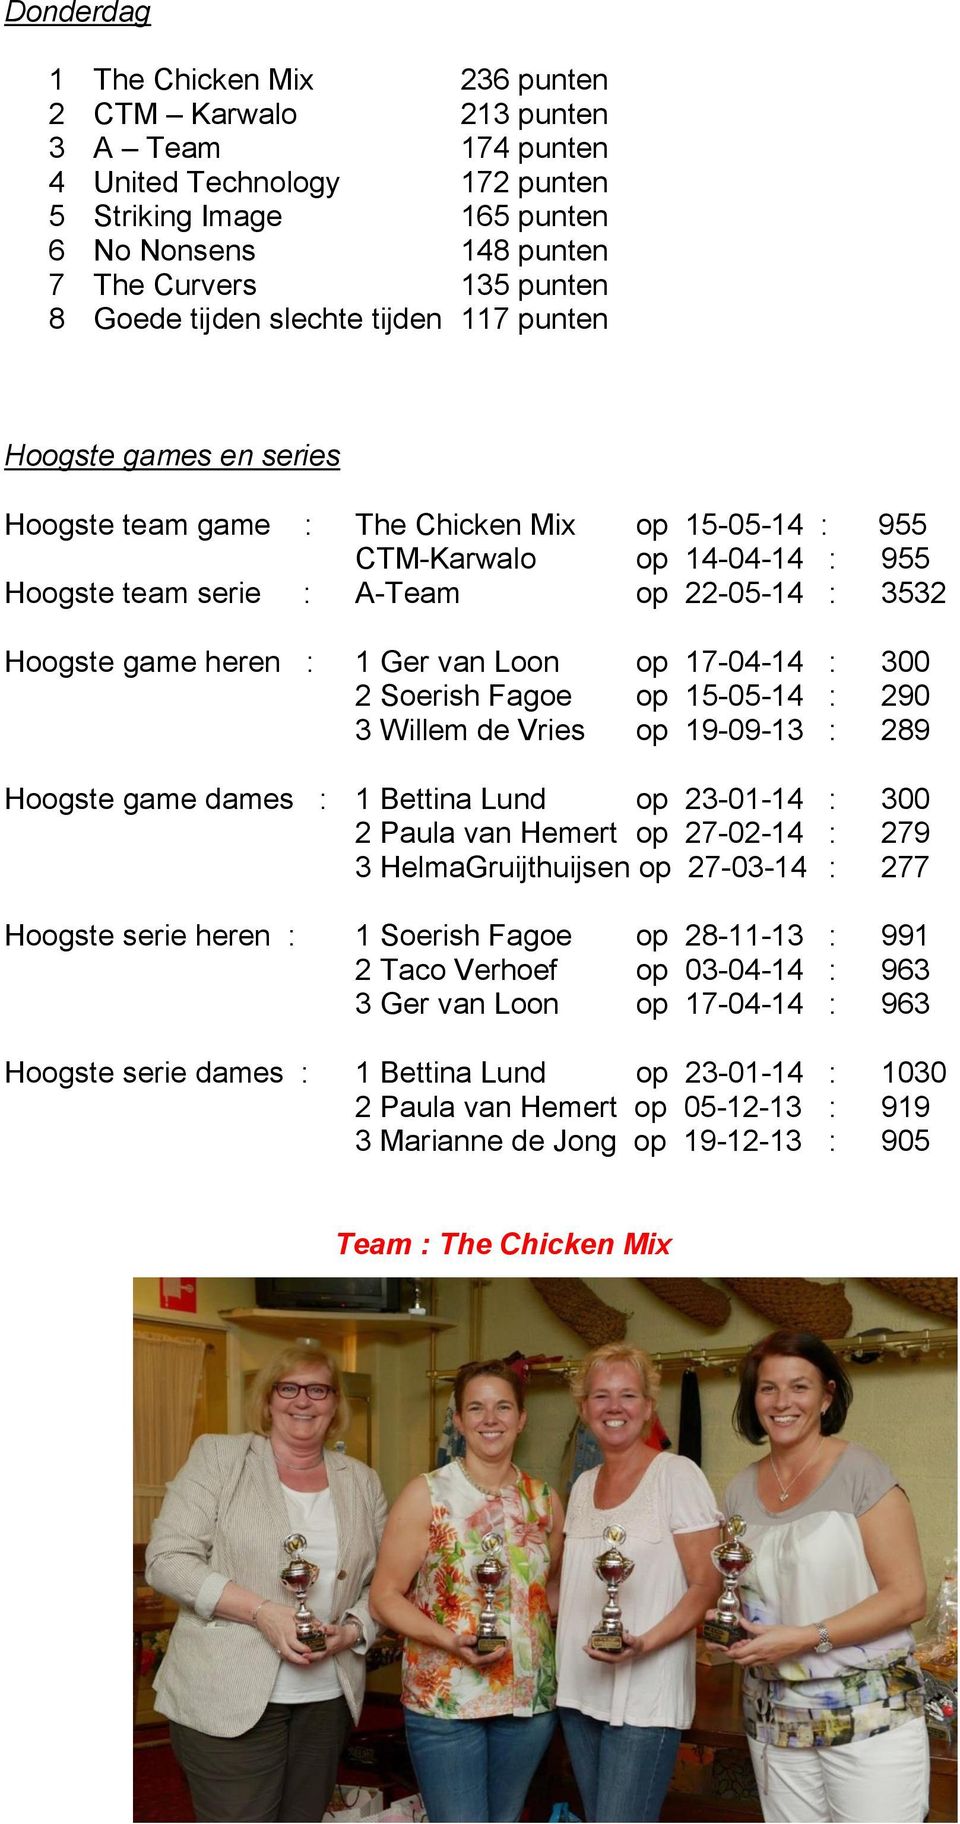 game heren : 1 Ger van Loon op 17-04-14 : 300 2 Soerish Fagoe op 15-05-14 : 290 3 Willem de Vries op 19-09-13 : 289 Hoogste game dames : 1 Bettina Lund op 23-01-14 : 300 2 Paula van Hemert op